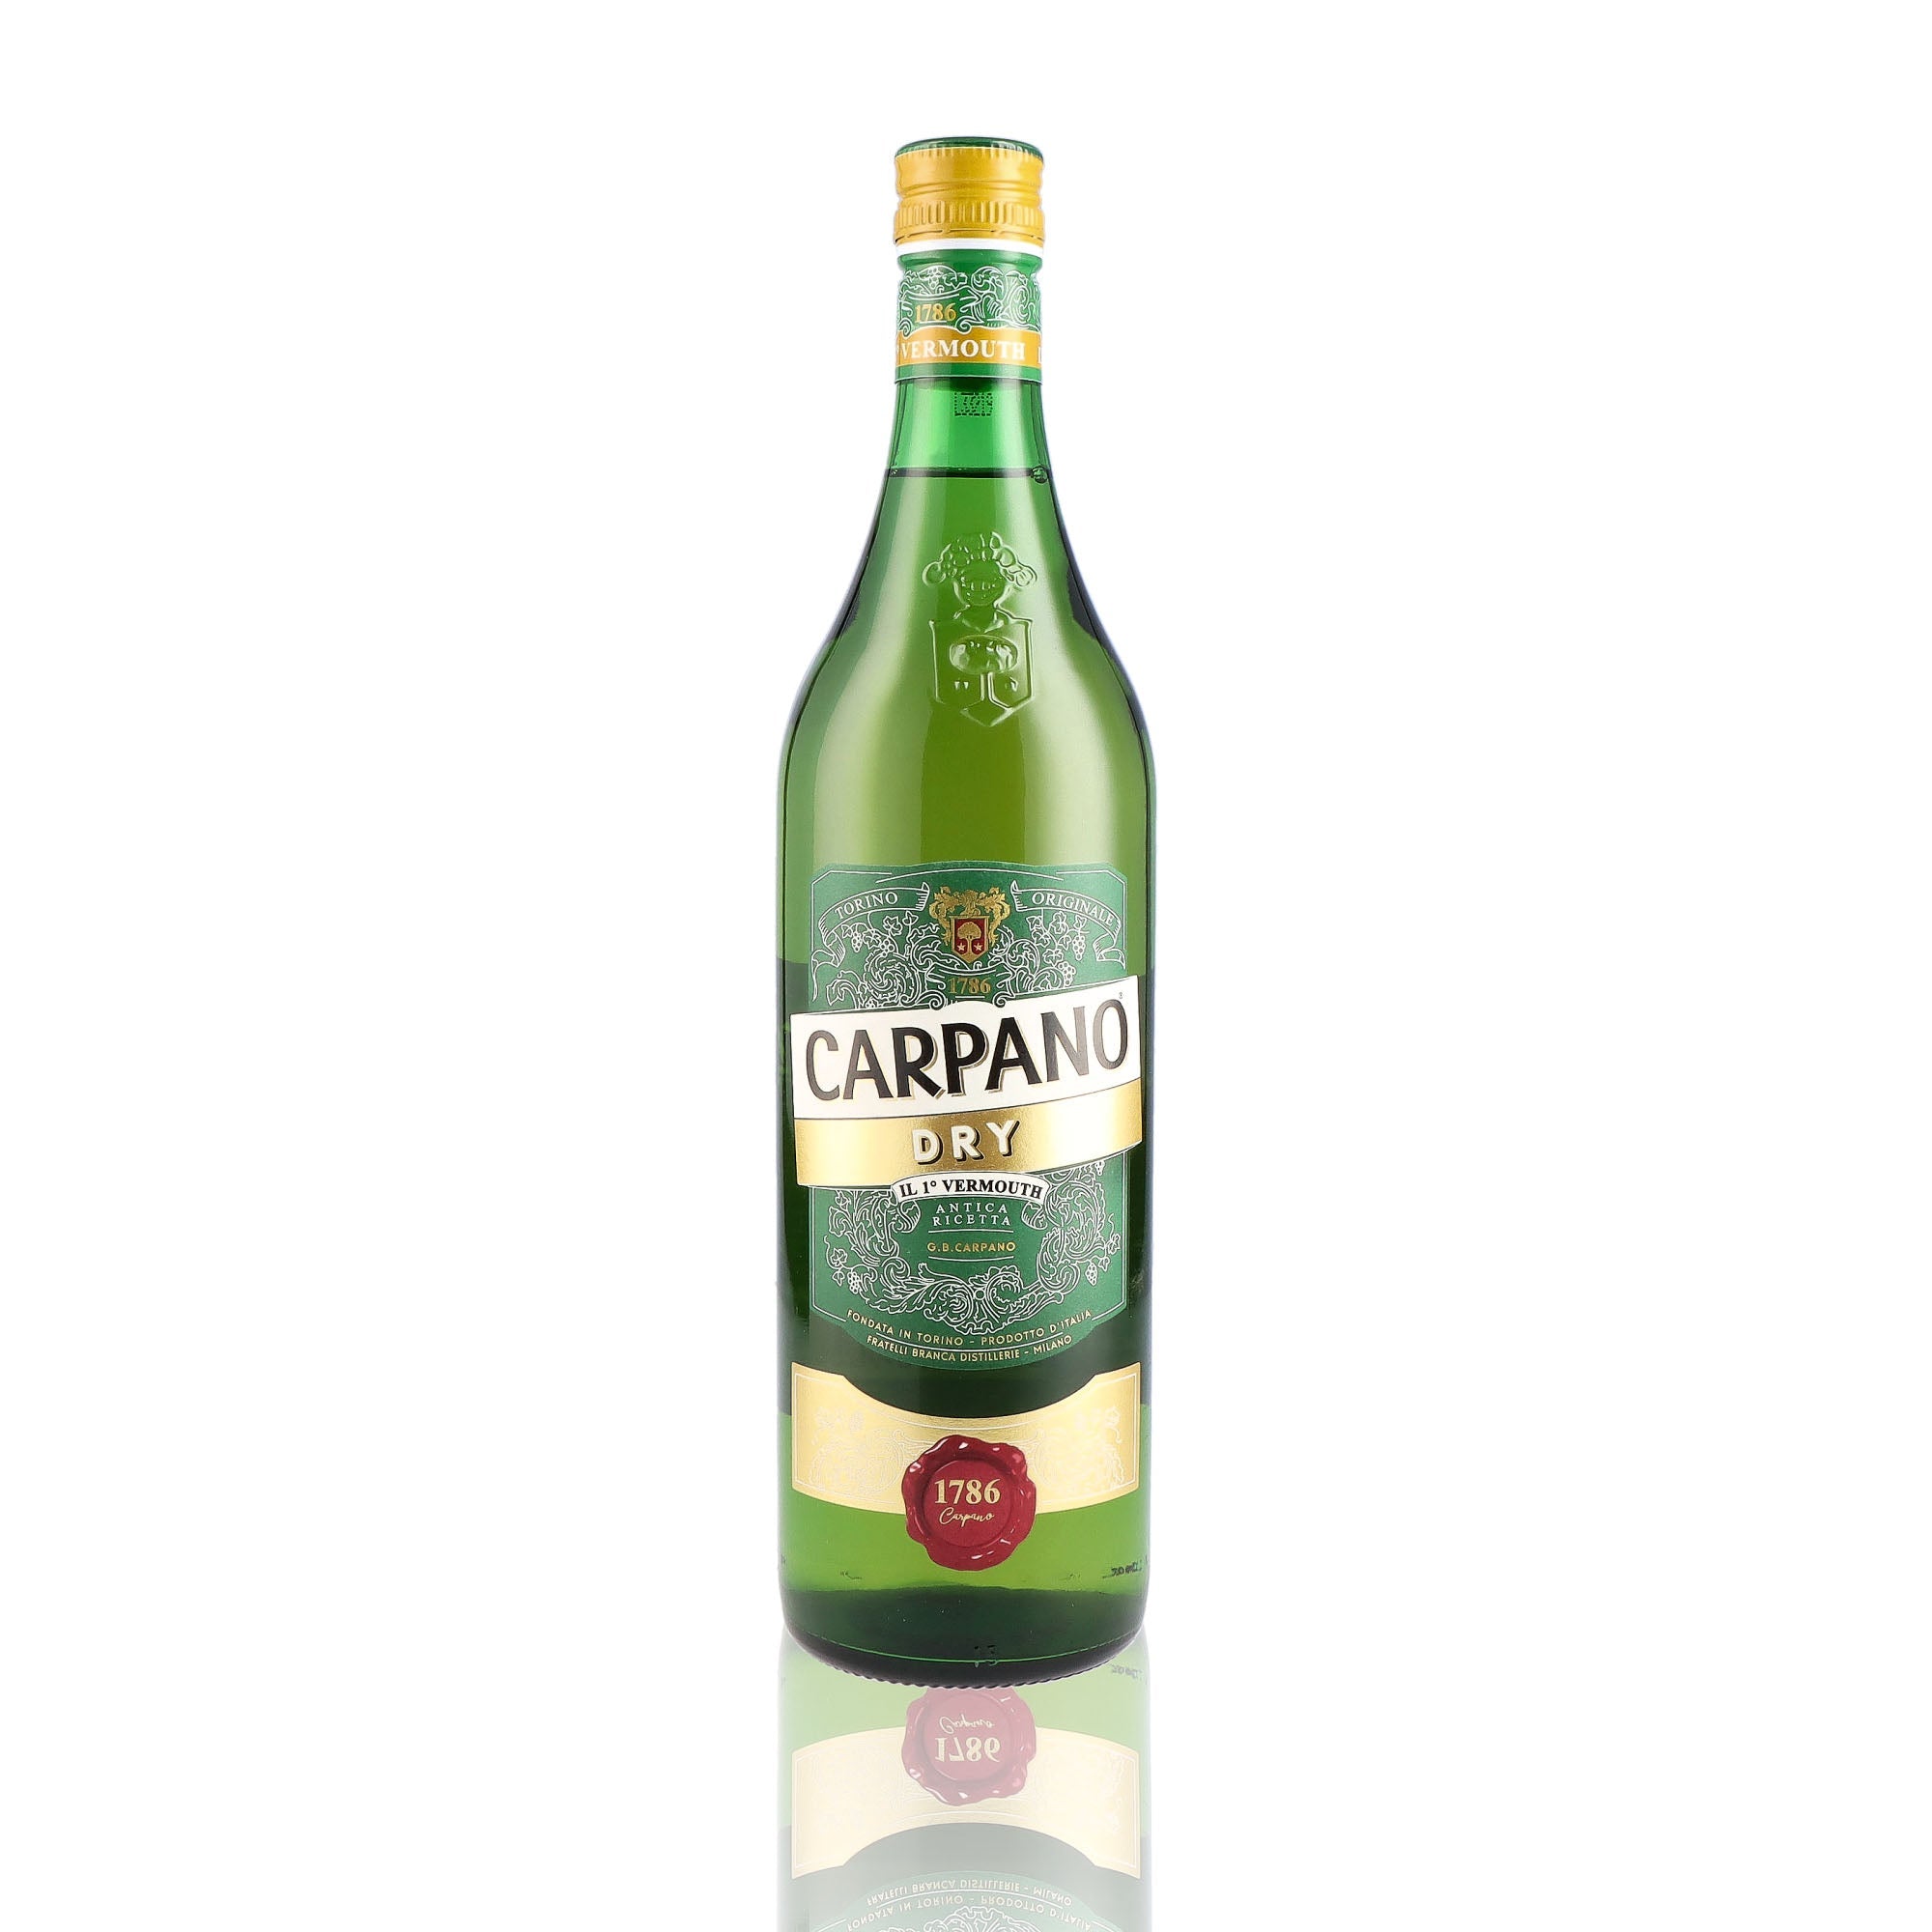 Une bouteille de vermouth, de la marque Carpano, nommée Dry.